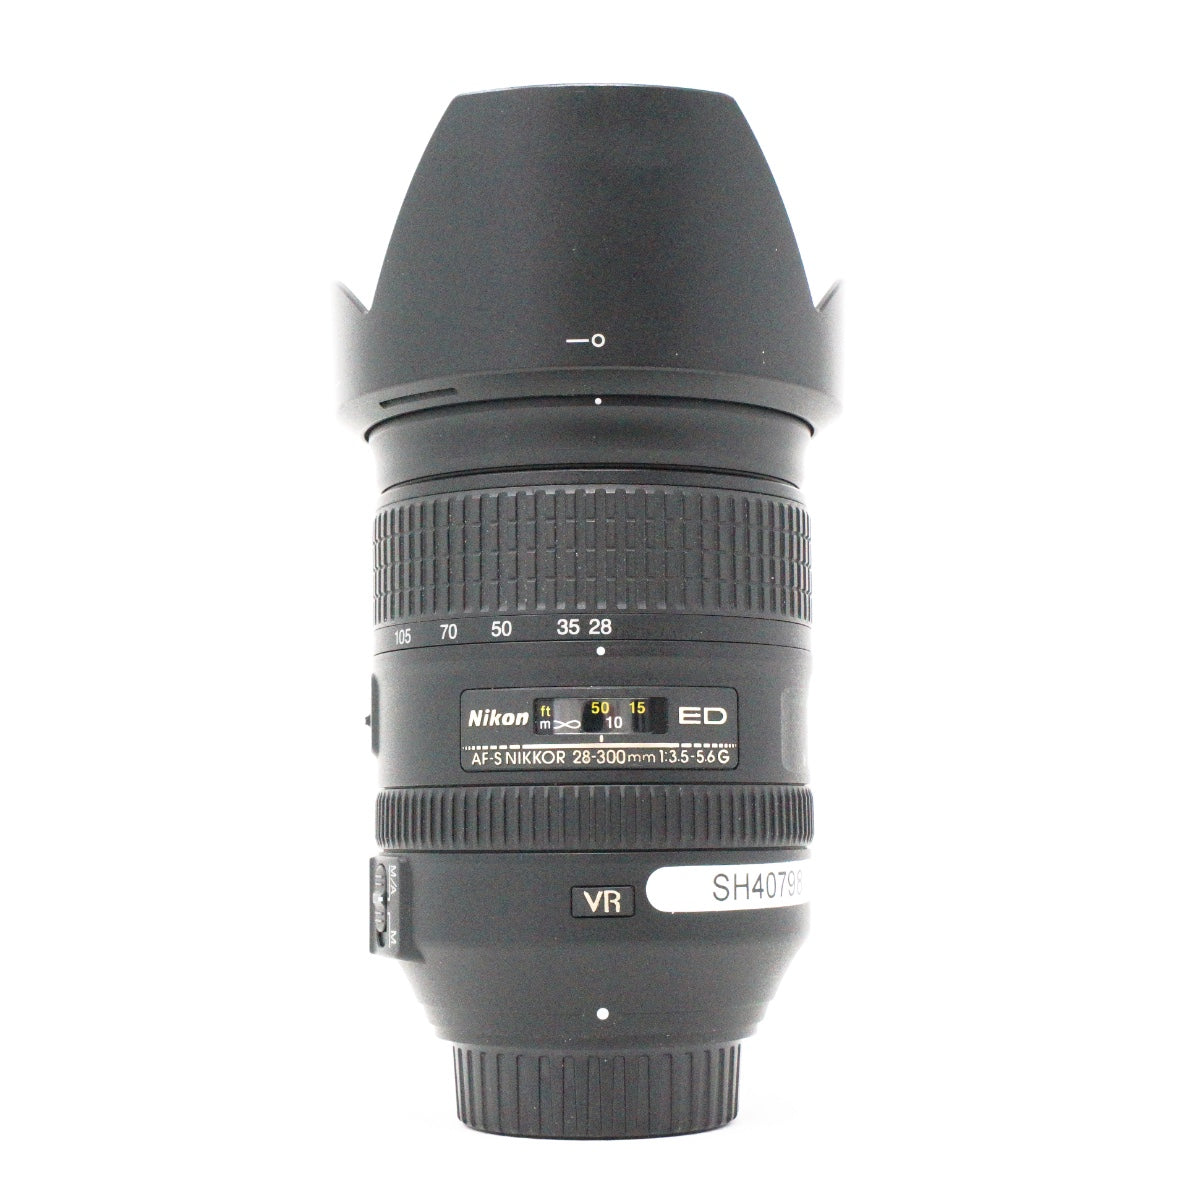 Used Nikon AF-S Nikkor 28-300mm F3.5/5.6G VR lens